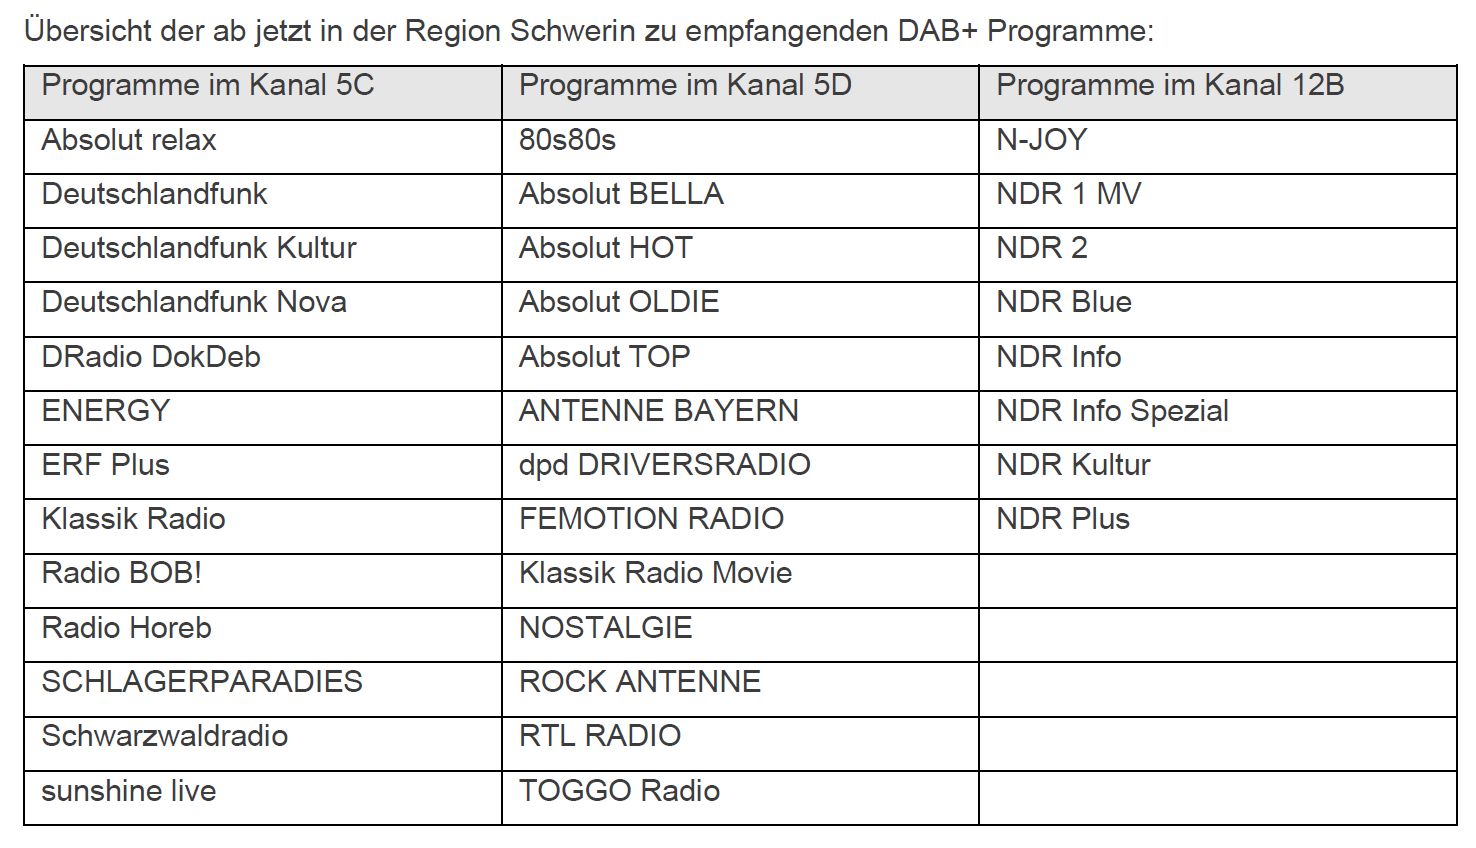 DAB+ in Mecklenburg-Vorpommern: Ab sofort über 30 DAB+ Radioprogramme Großraum Schwerin | DAB+ Radio